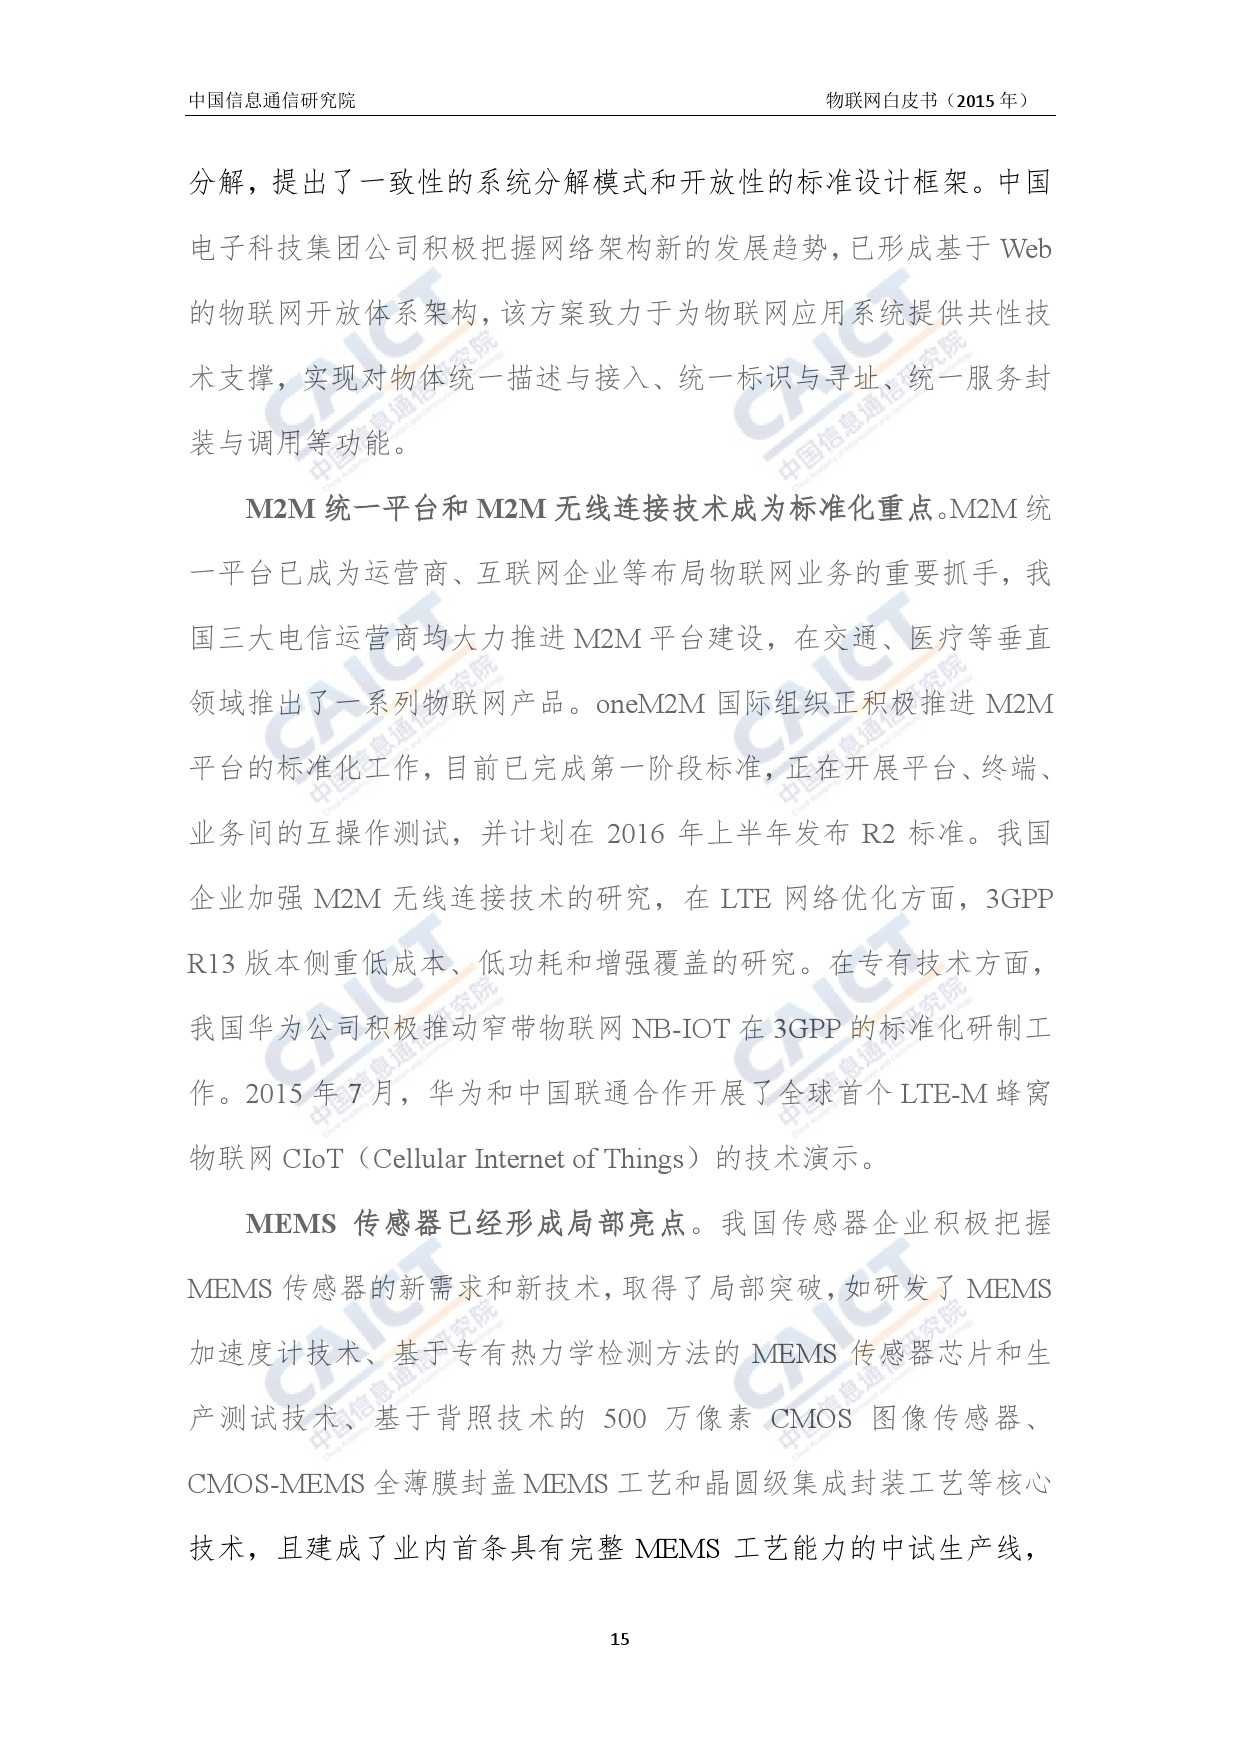 中国信息通信研究院：2015年物联网白皮书_000019